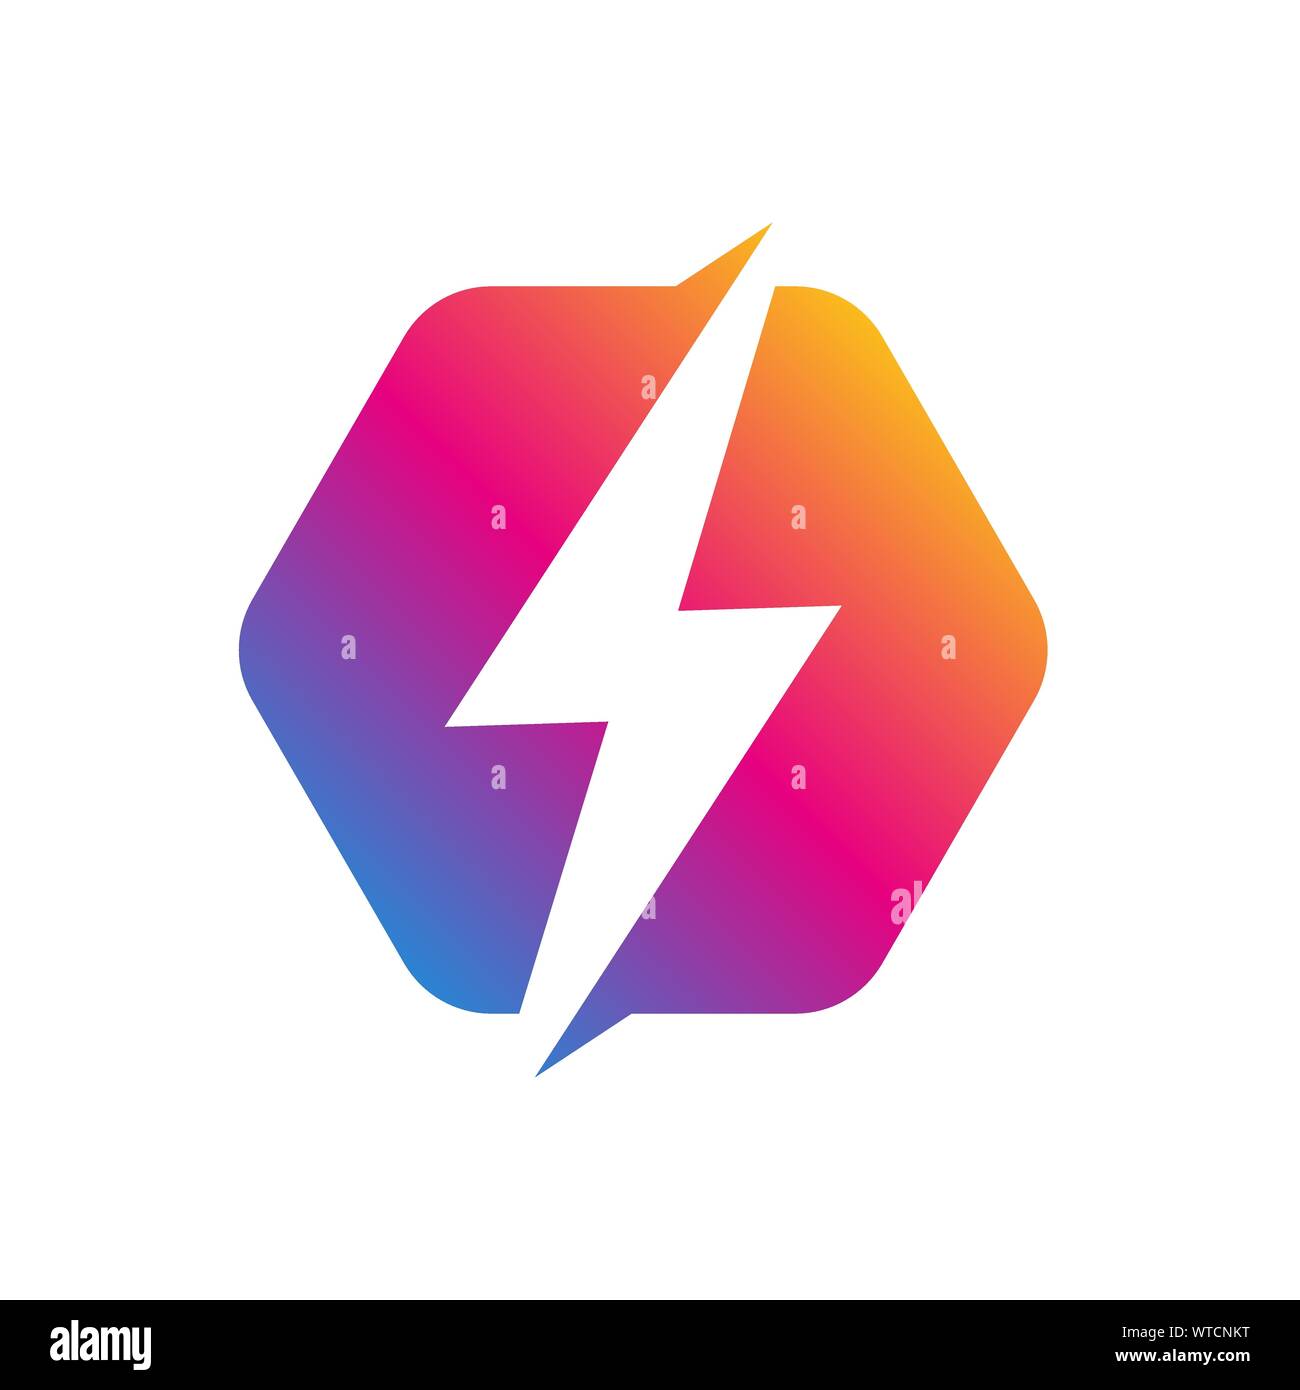 Logo Flash design astratti template vettoriale. Vite di illuminazione icona. Il logo Thunder energia elettrica velocità rapida logotipo concetto. Vettore. EPS 10 Illustrazione Vettoriale